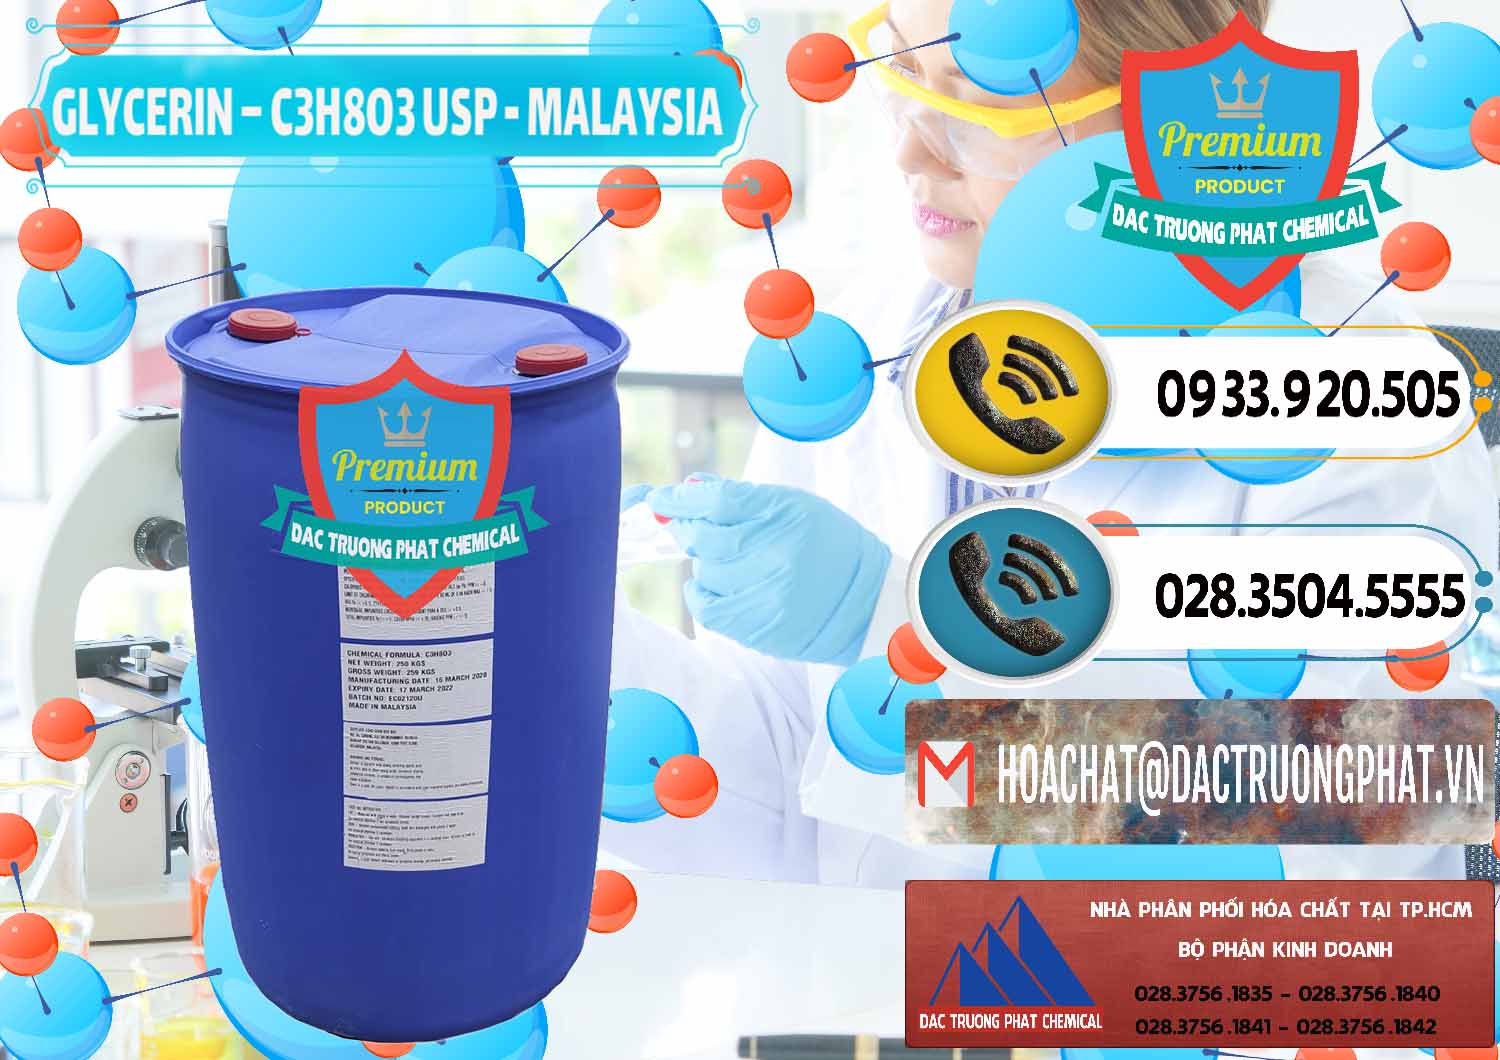 Cung cấp - bán Glycerin – C3H8O3 USP Malaysia - 0233 - Bán ( cung cấp ) hóa chất tại TP.HCM - hoachatdetnhuom.vn